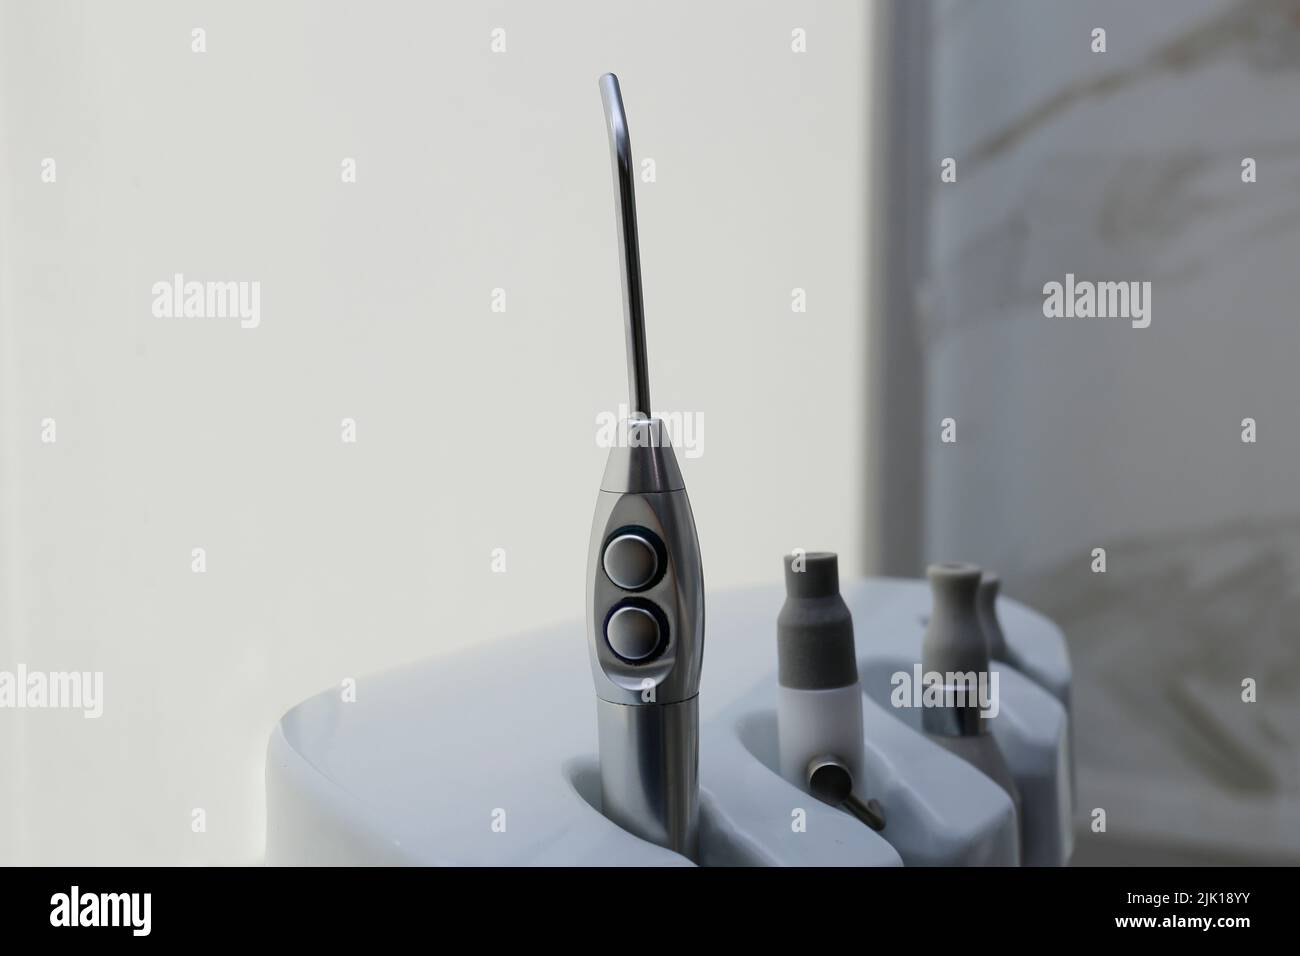 oggetti per ufficio medico dentale, strumenti per dentisti - concetto di sanità e odontoiatria - fuoco selettivo Foto Stock